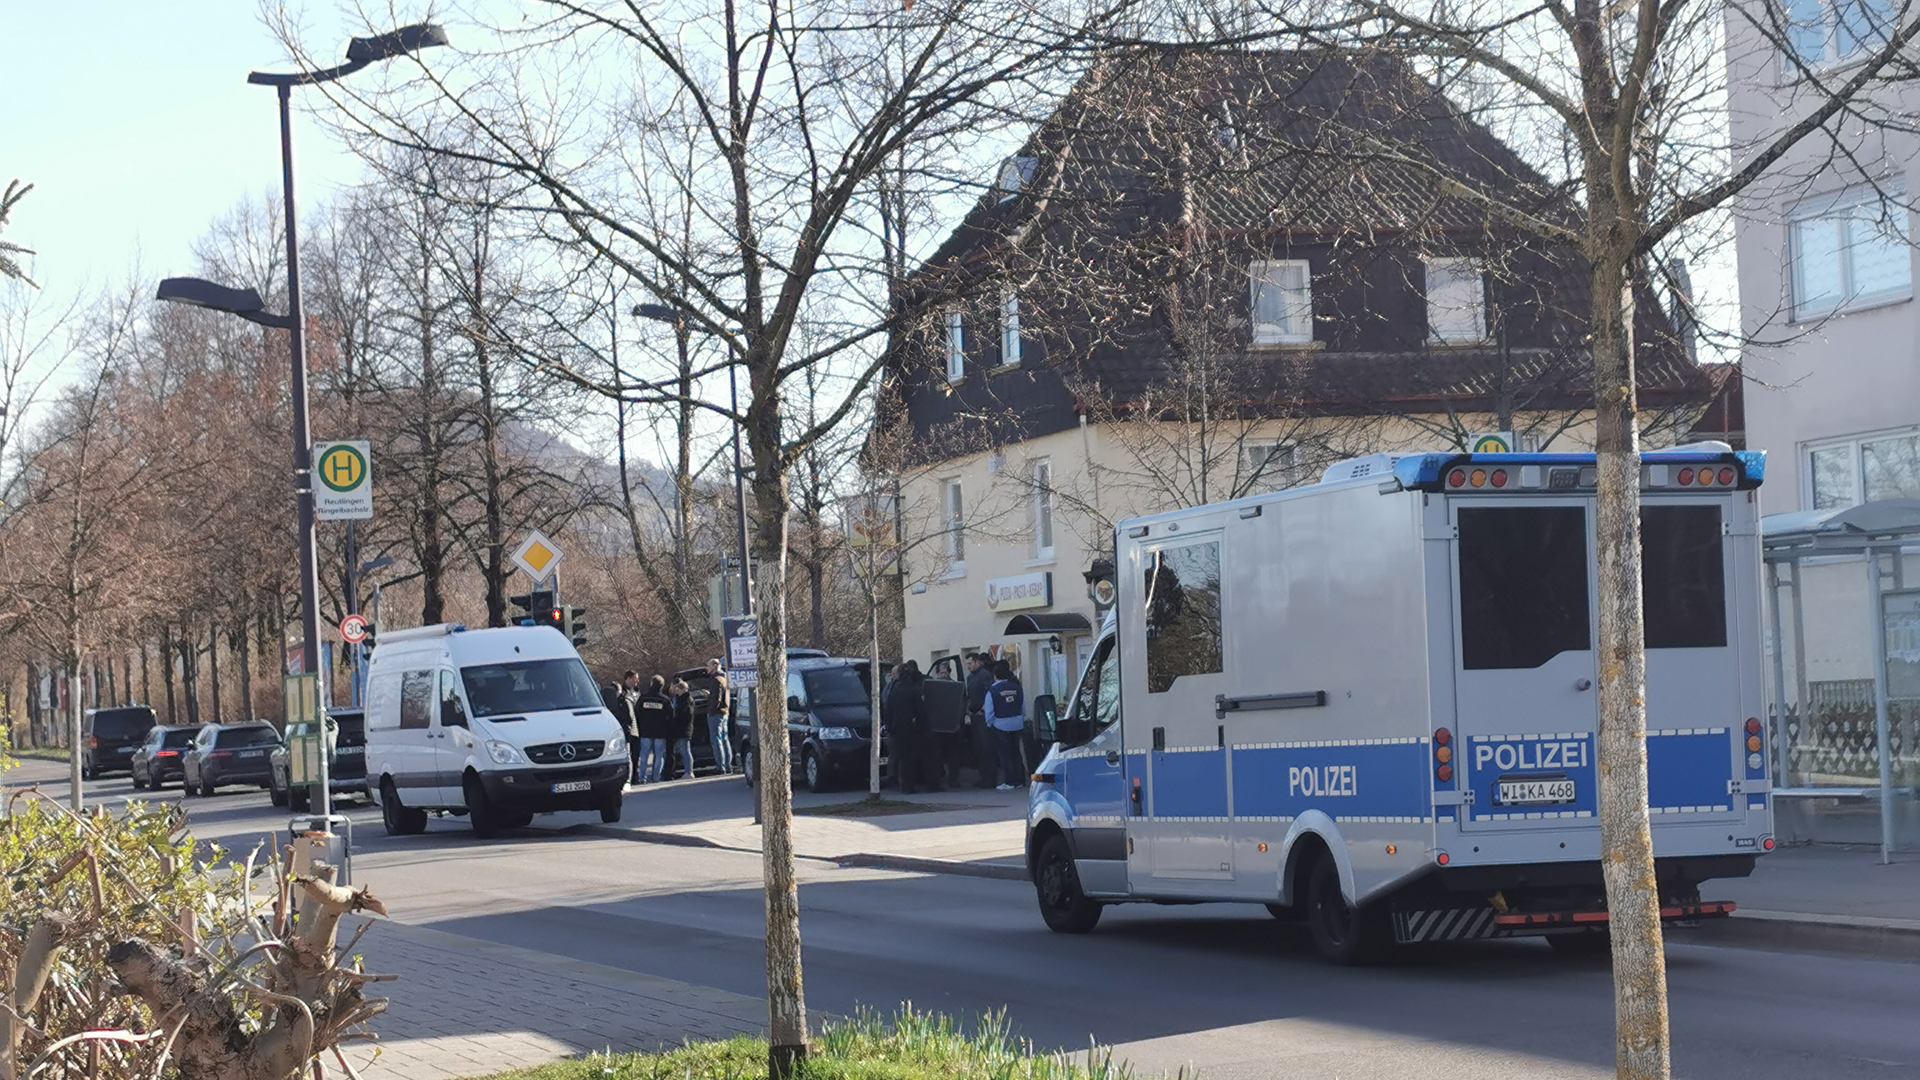 Polizeifahrzeuge stehen in einer Straße in Reutlingen.